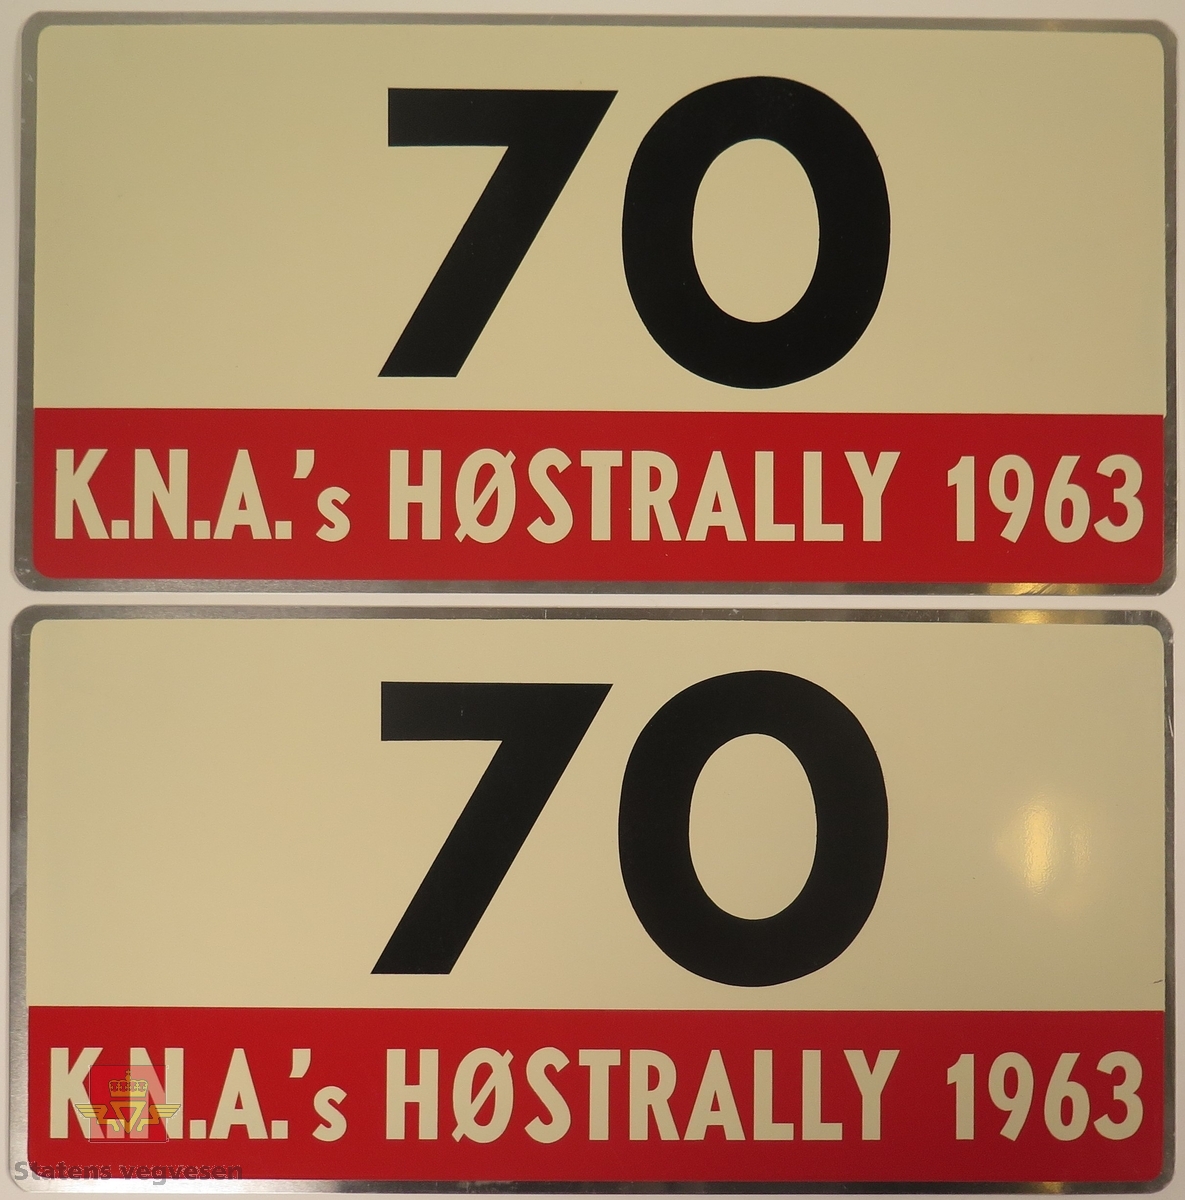 Hovedsakelig hvite metallskilt med et mindre rødt markeringsområde. Grupperingen med skilt har også nummeret "70" påført seg, dette er en indikasjon på deltakernummer.
Påskrift: K.N.A.'s HØSTRALLY 1963